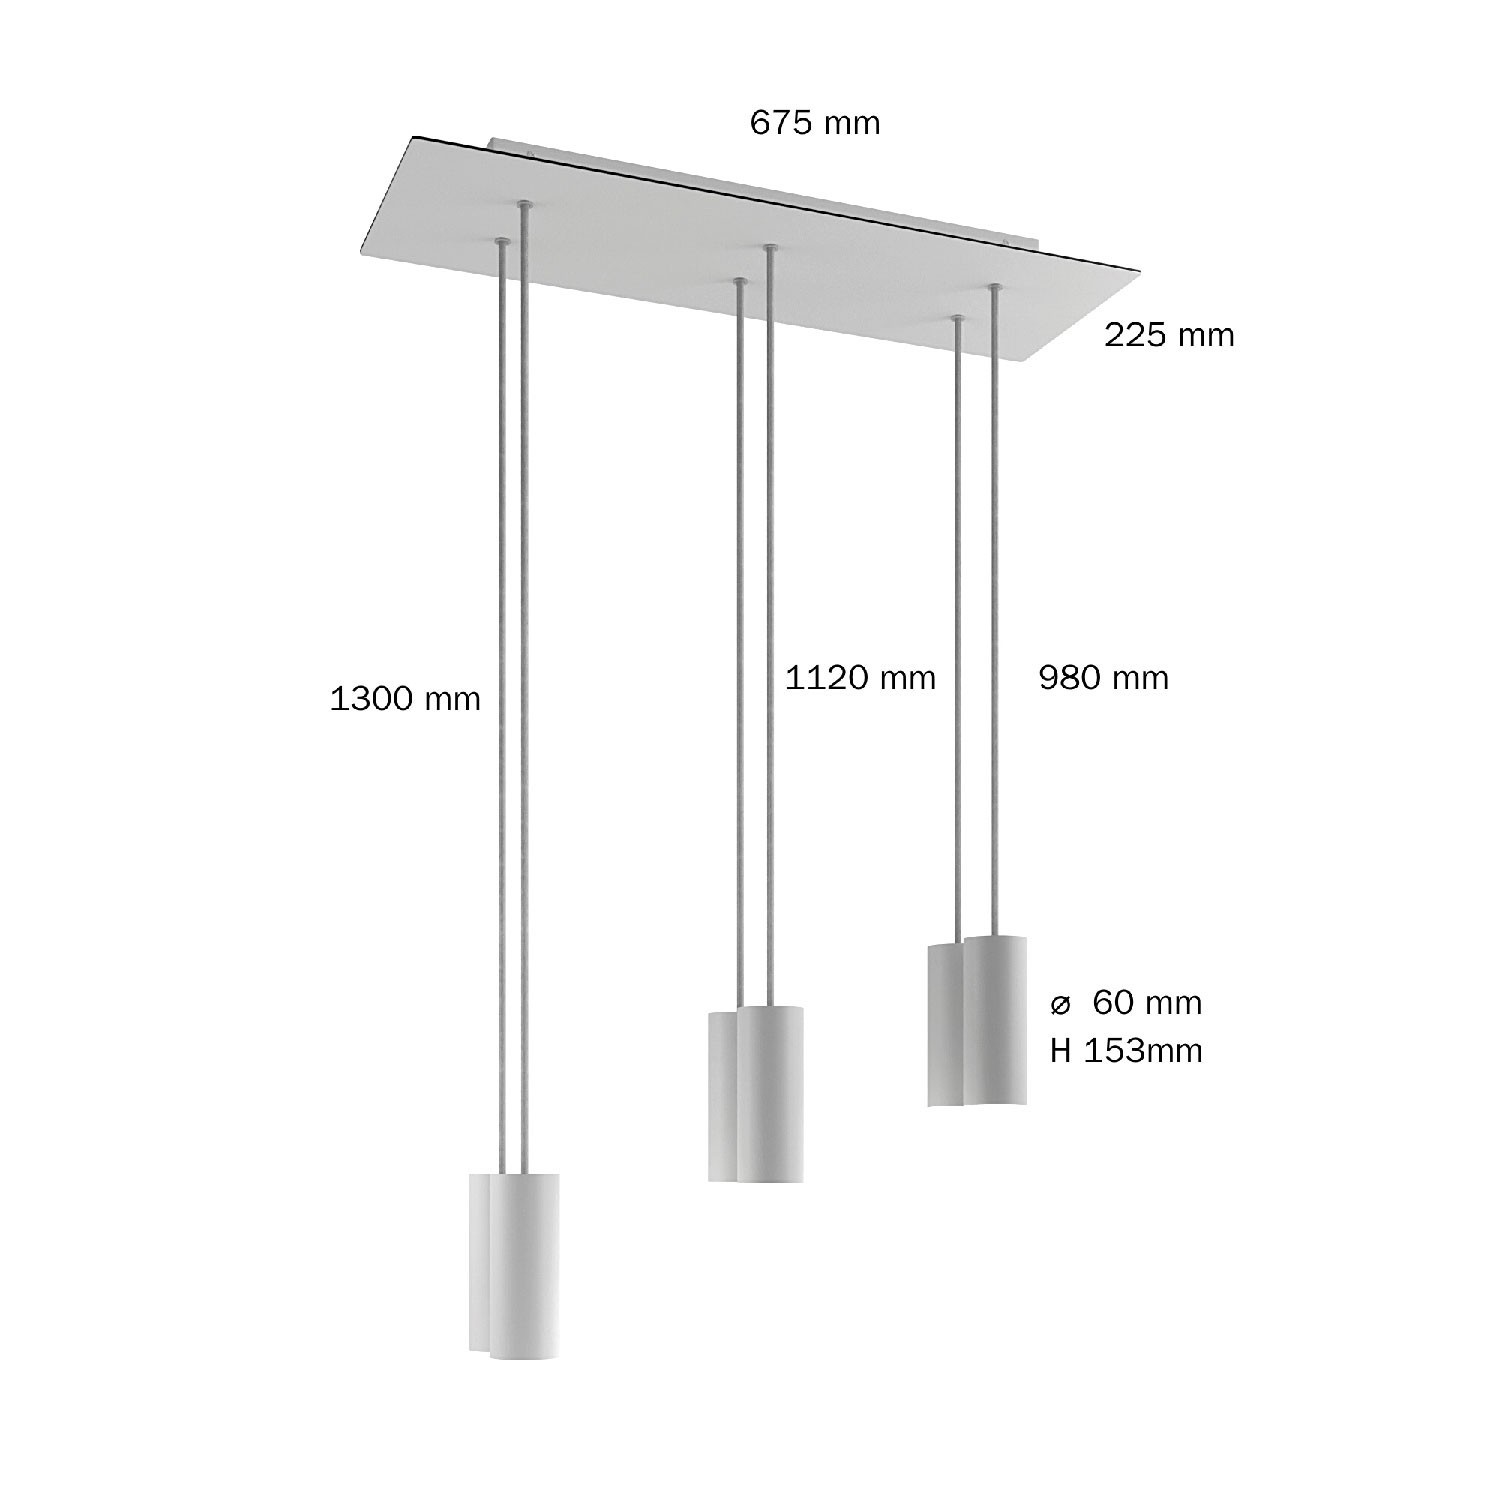 6 lichts-hanglamp voorzien van XXL rechthoekige Rose-One 675 mm compleet met strijkijzersnoer en Tub E14 metalen lampenkap